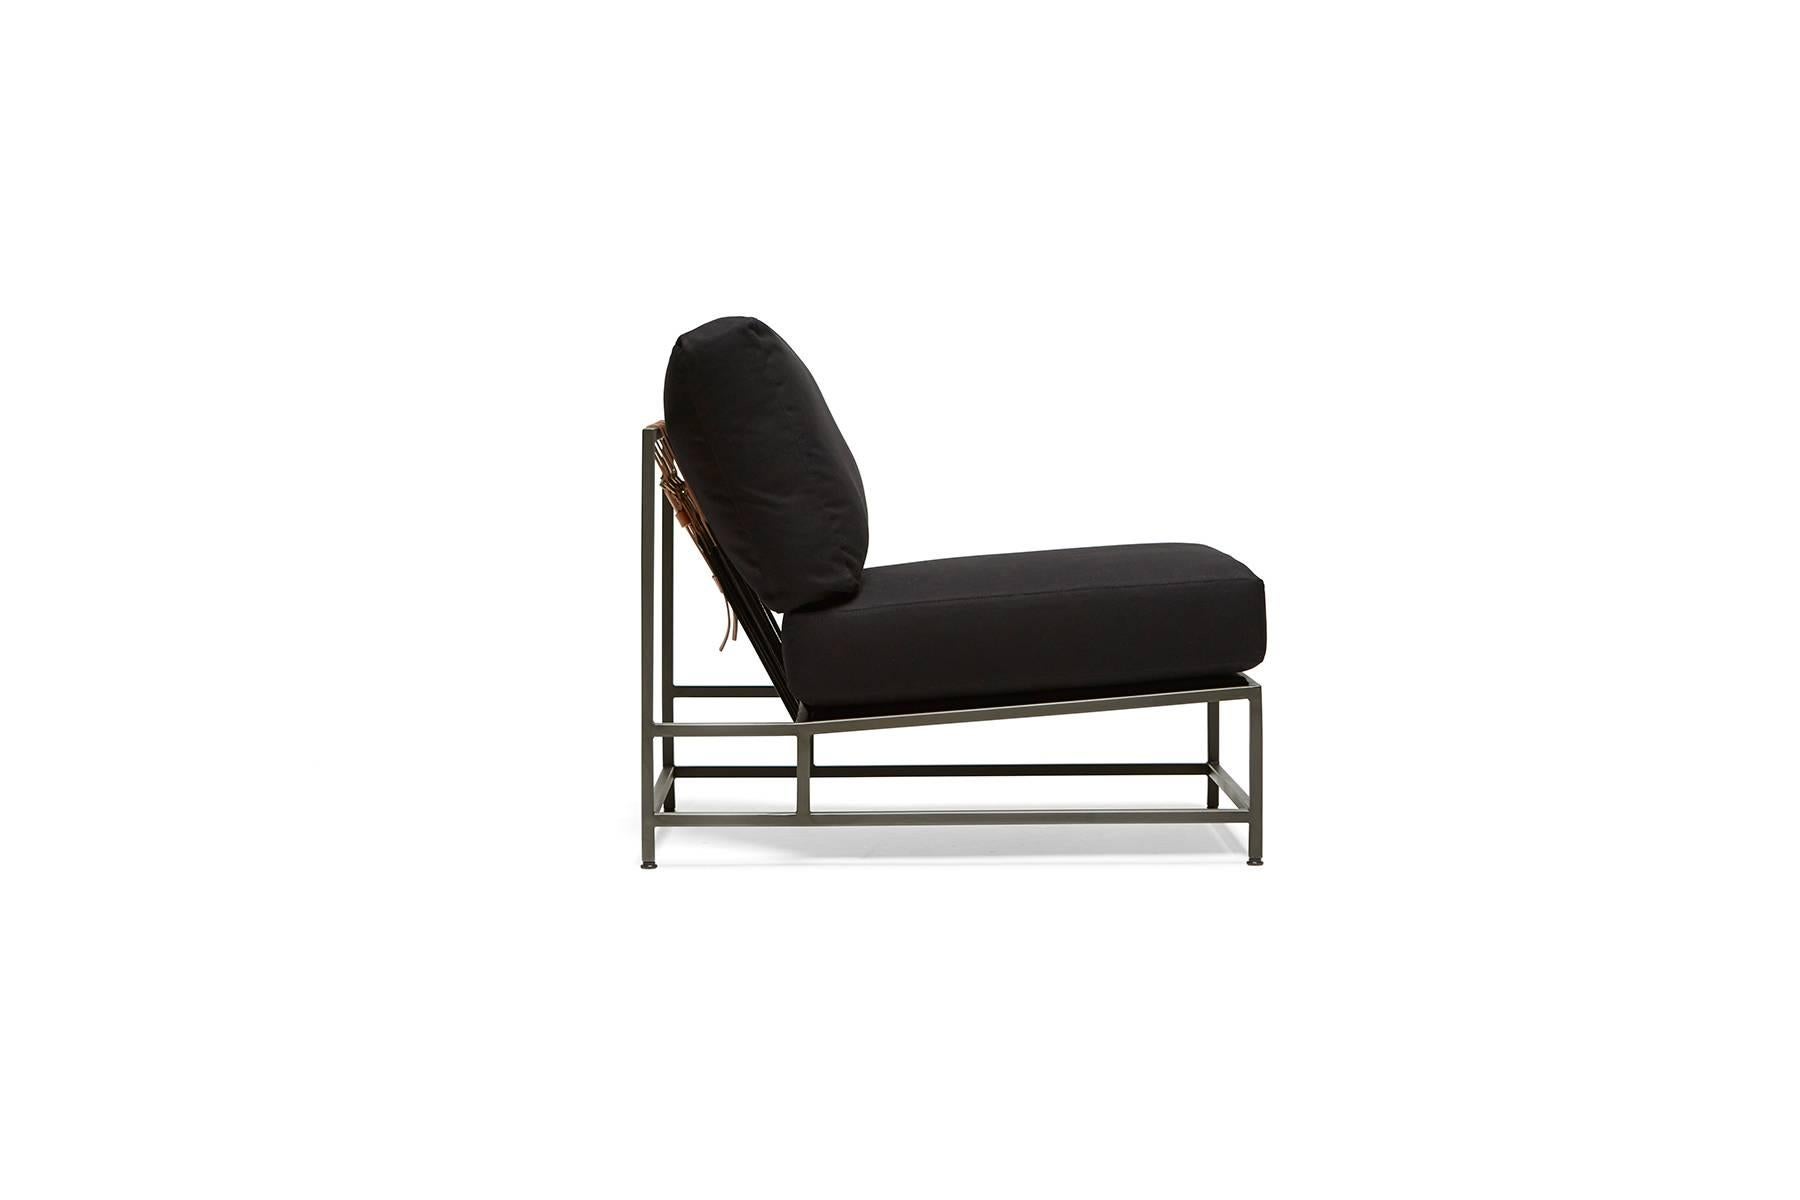 Dieser Stuhl hat weiche schwarze Canvas-Kissenbezüge, ein geschwärztes Stahlgestell mit schwarzem Baumwollgewebe und cognacfarbenen Ledergurten.

Dieser Artikel wird auf Bestellung in Los Angeles gefertigt.

Bitte senden Sie uns eine Nachricht